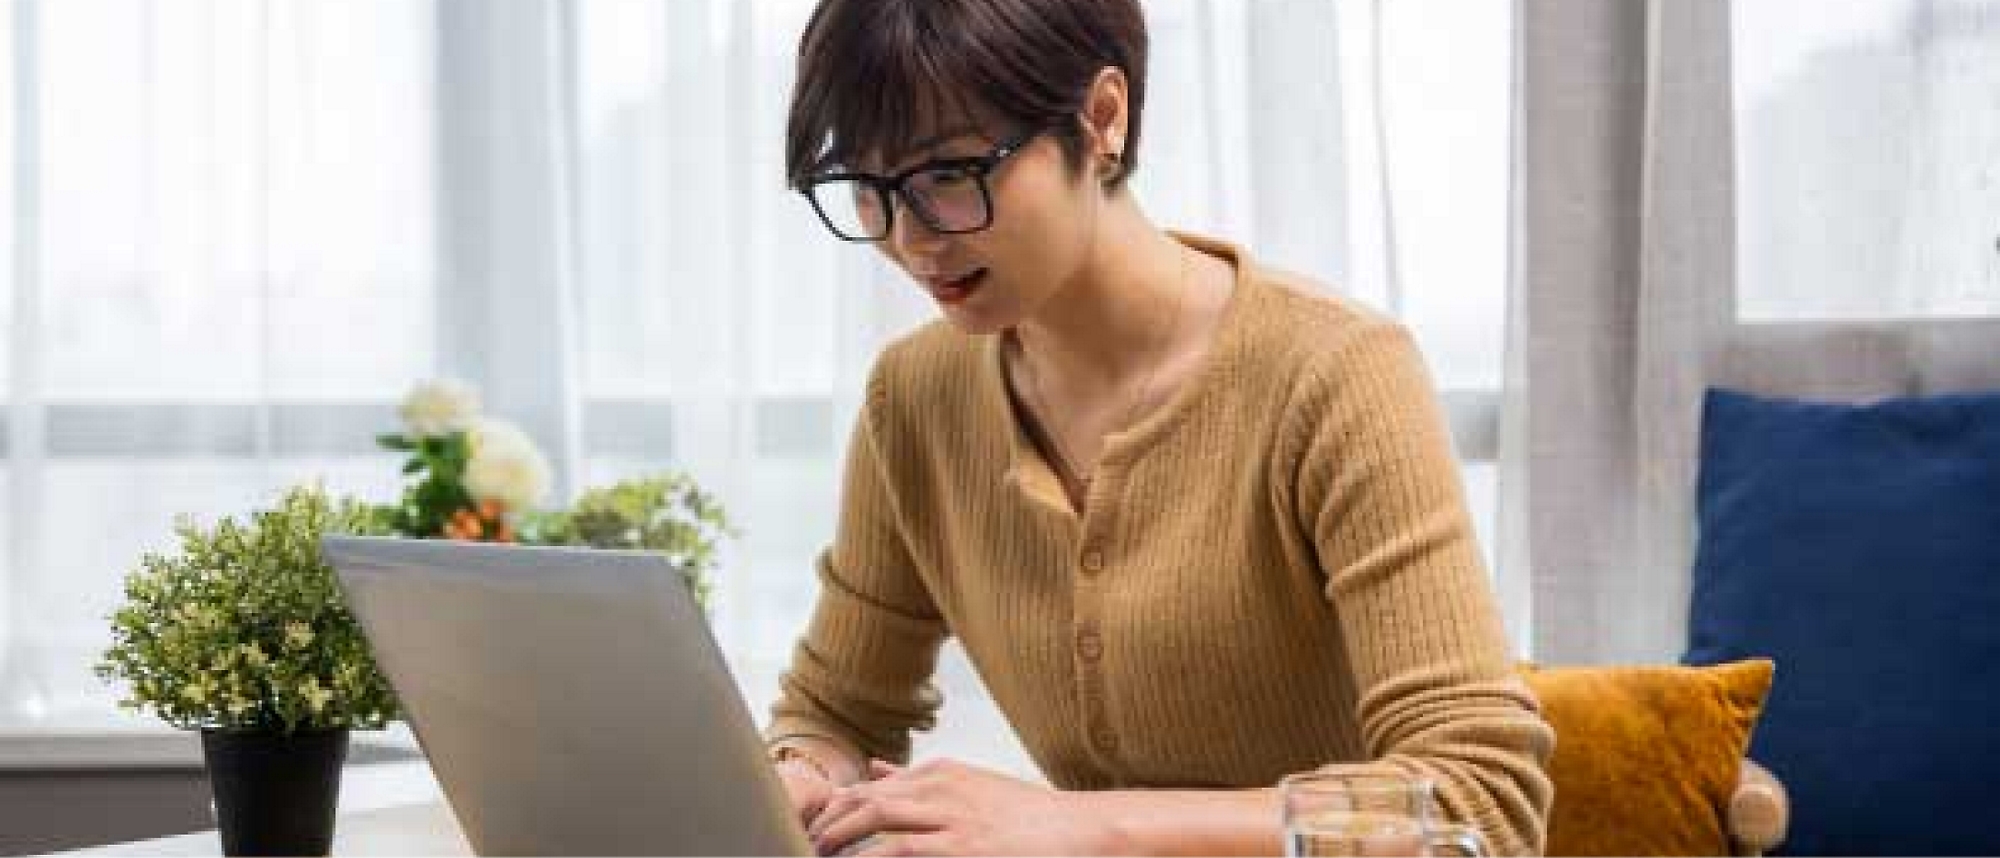 صورة لمرأة تجلس على طاولة وتستخدم جهاز كمبيوتر محمول.